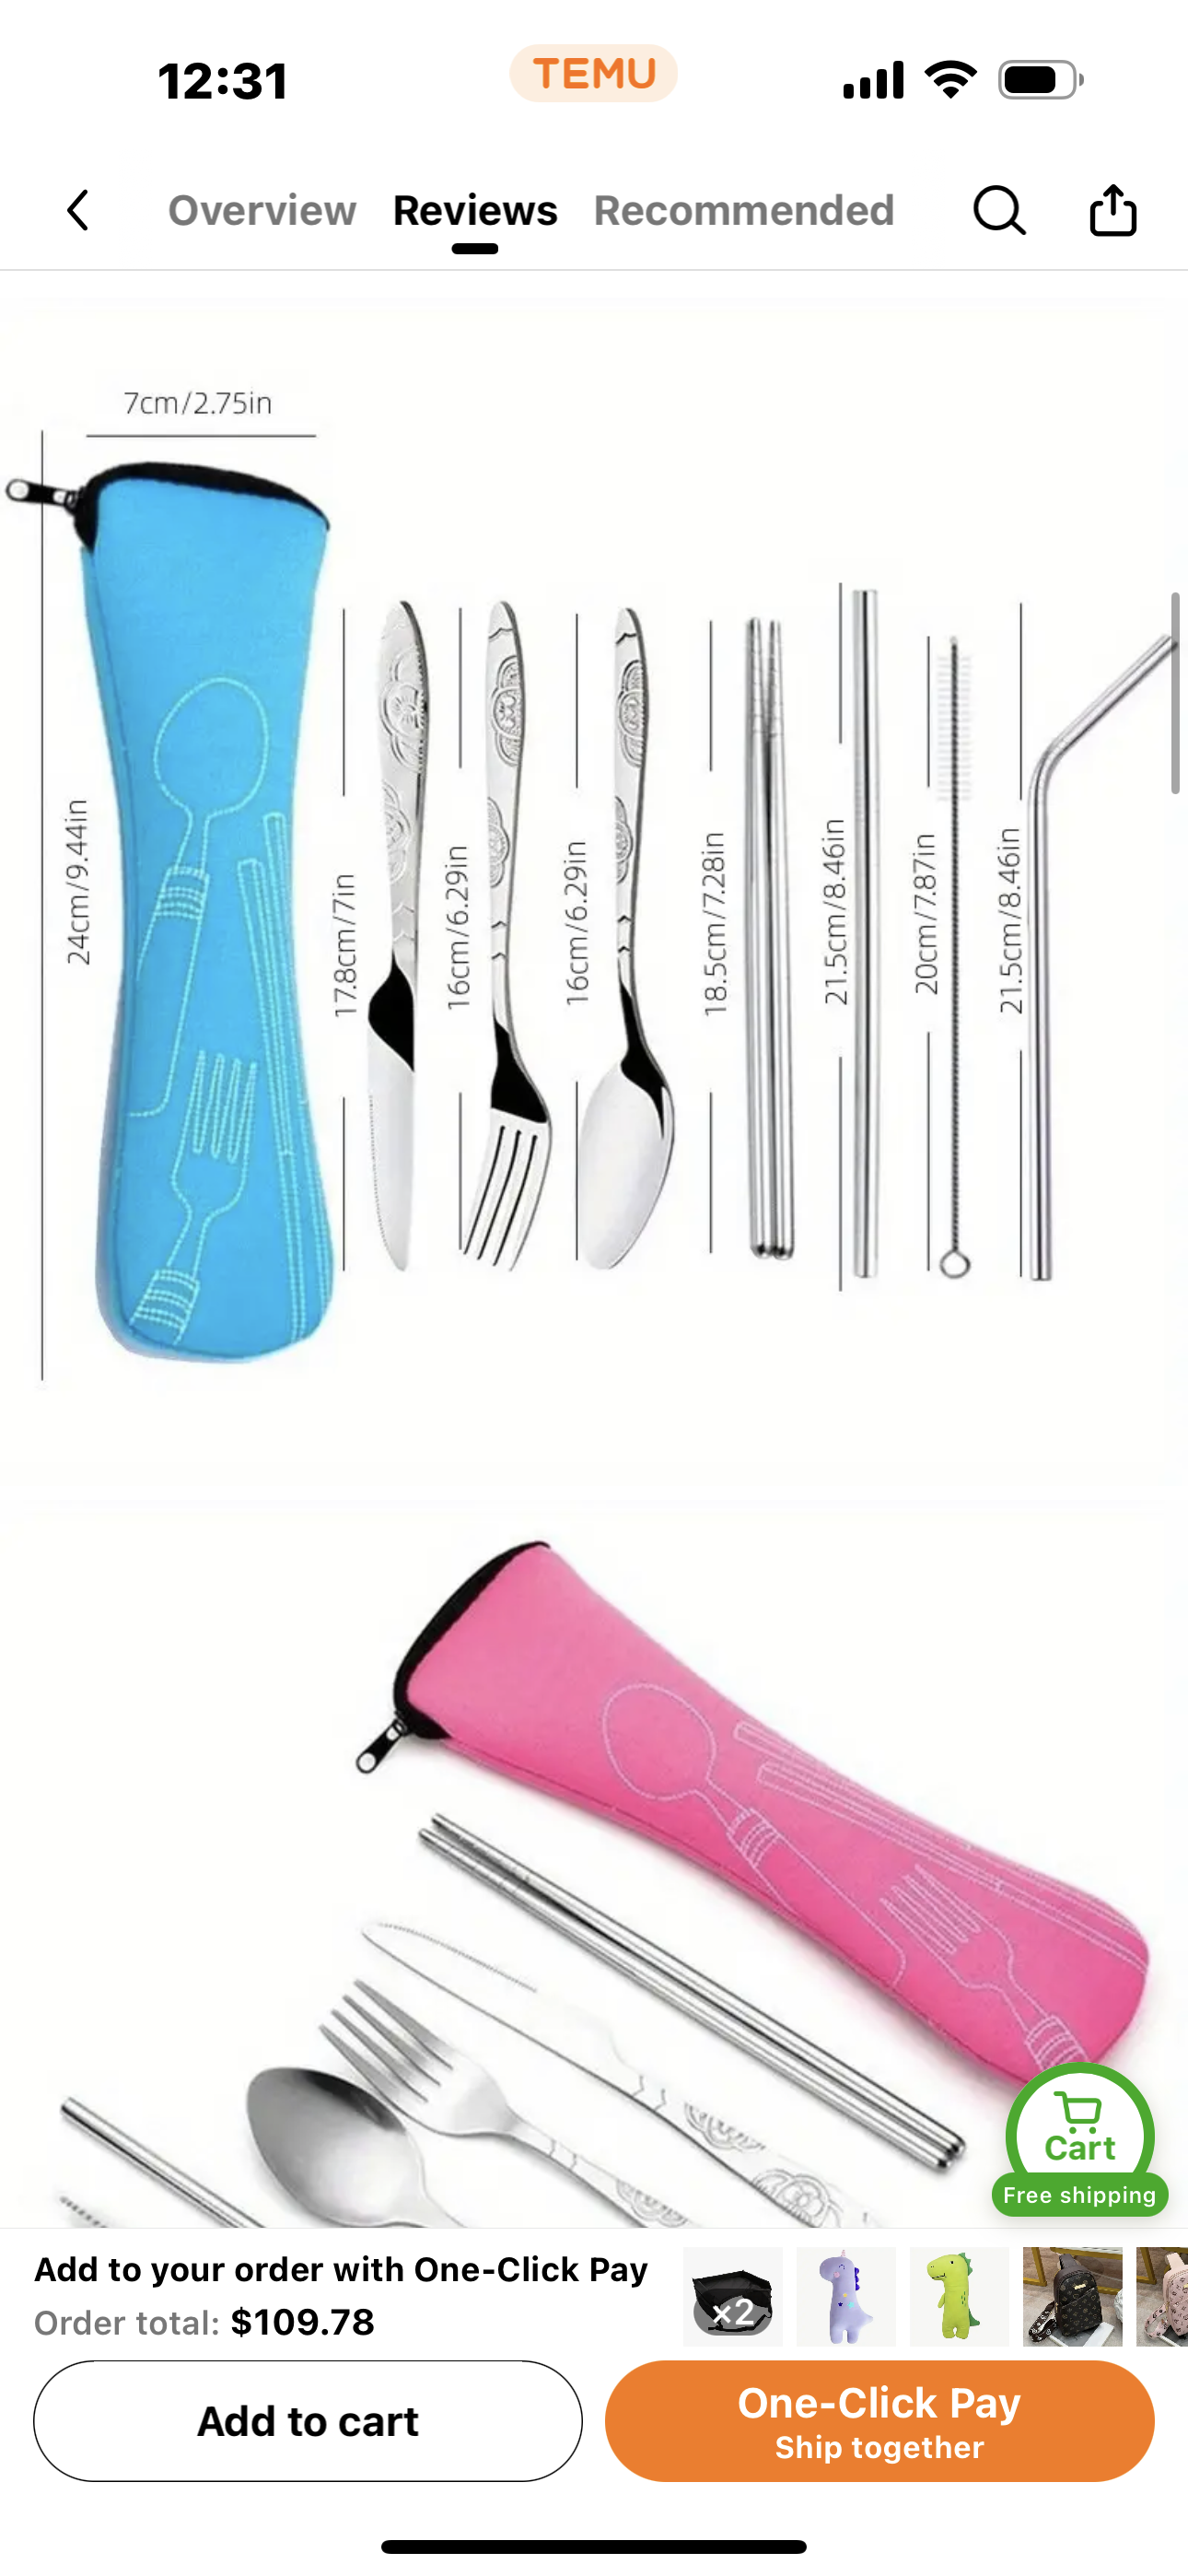 Travel utensils